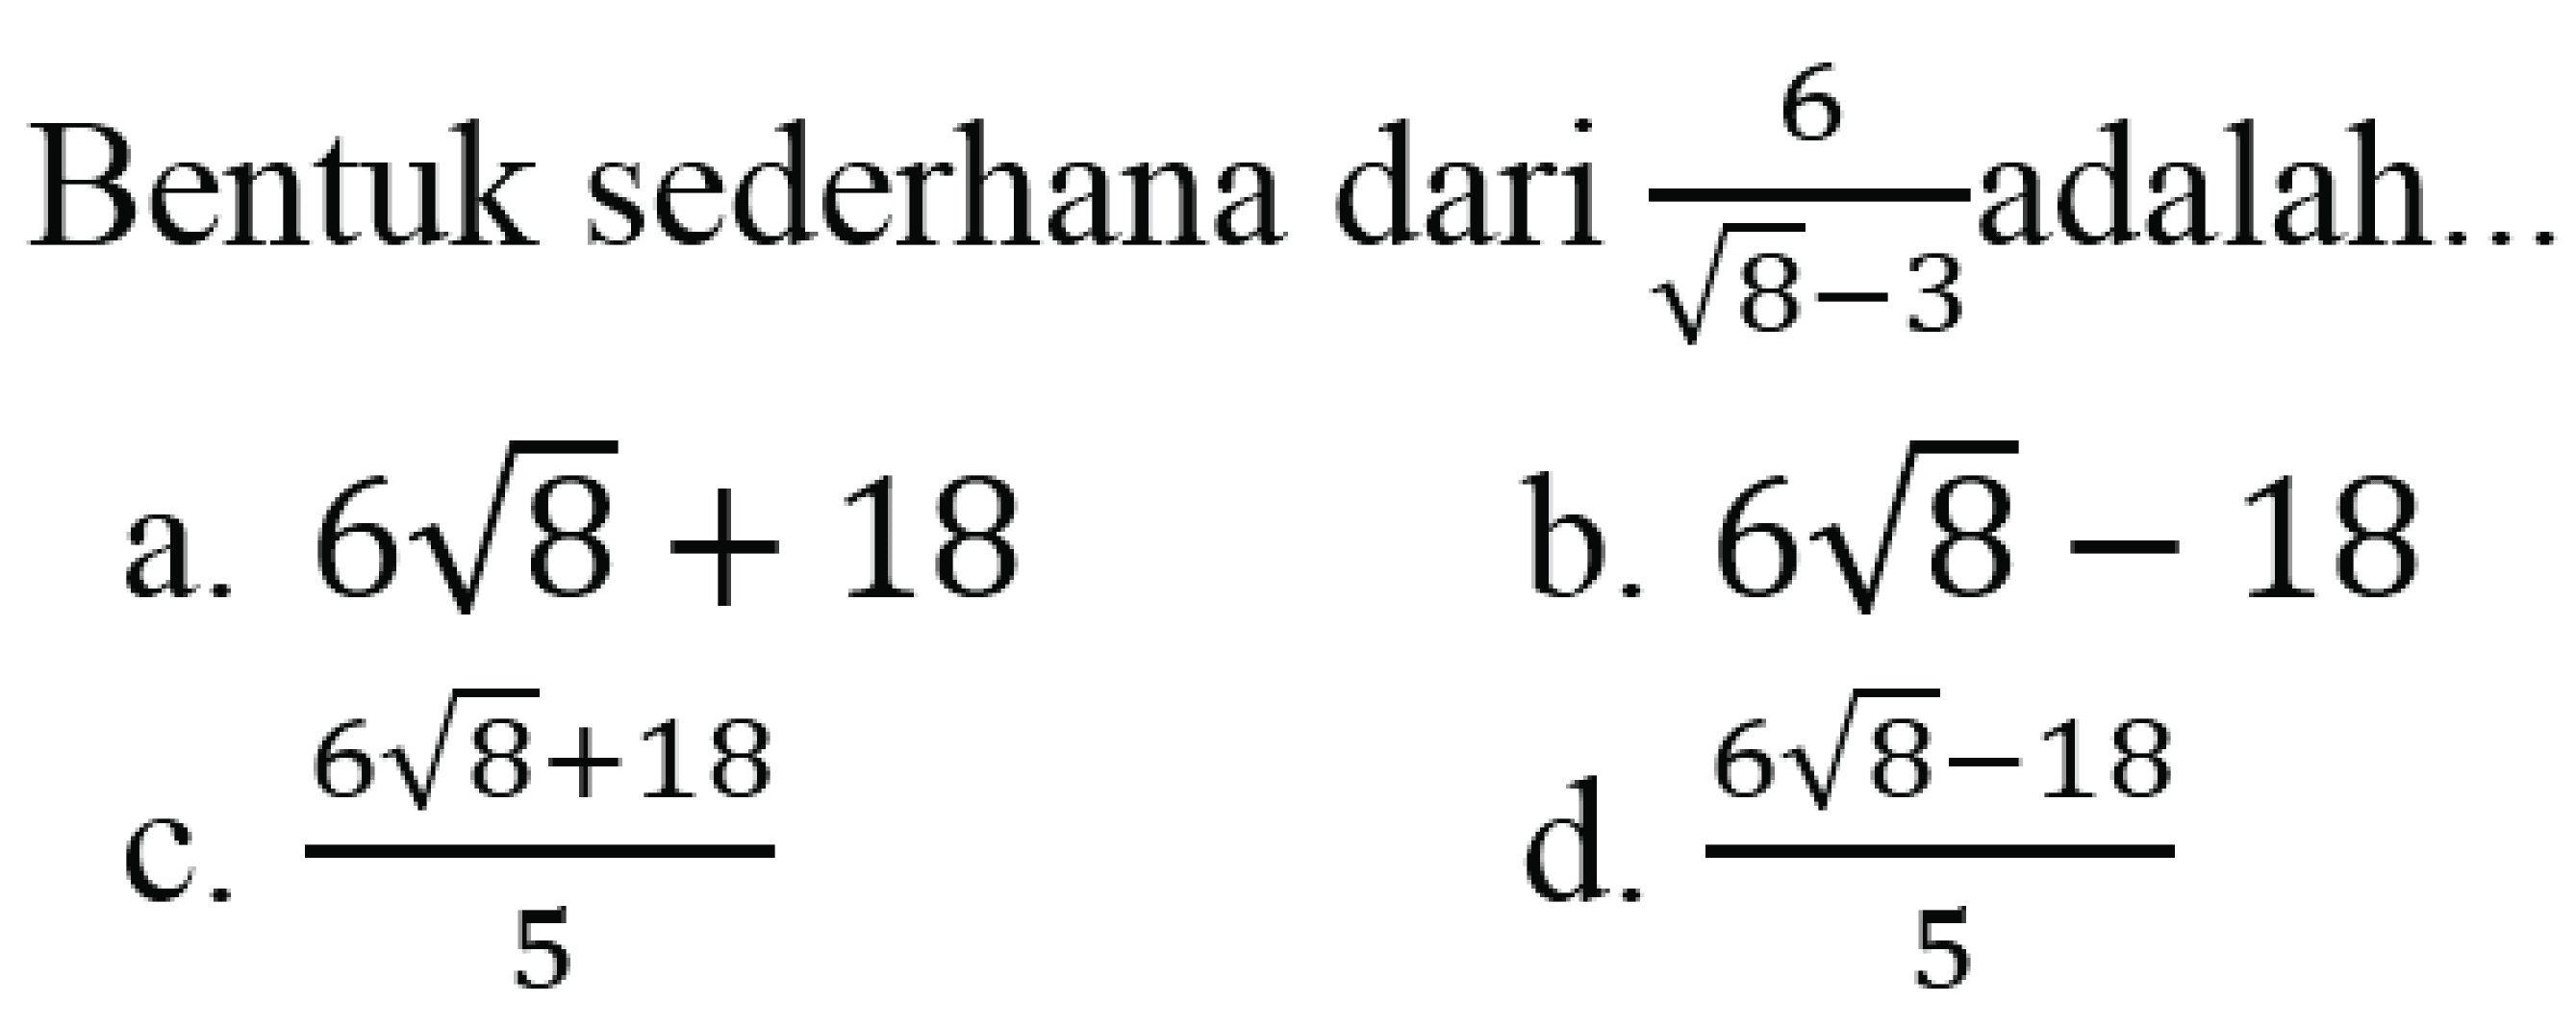 Bentuk sederhana dari 6/(akar(8) - 3) adalah..
